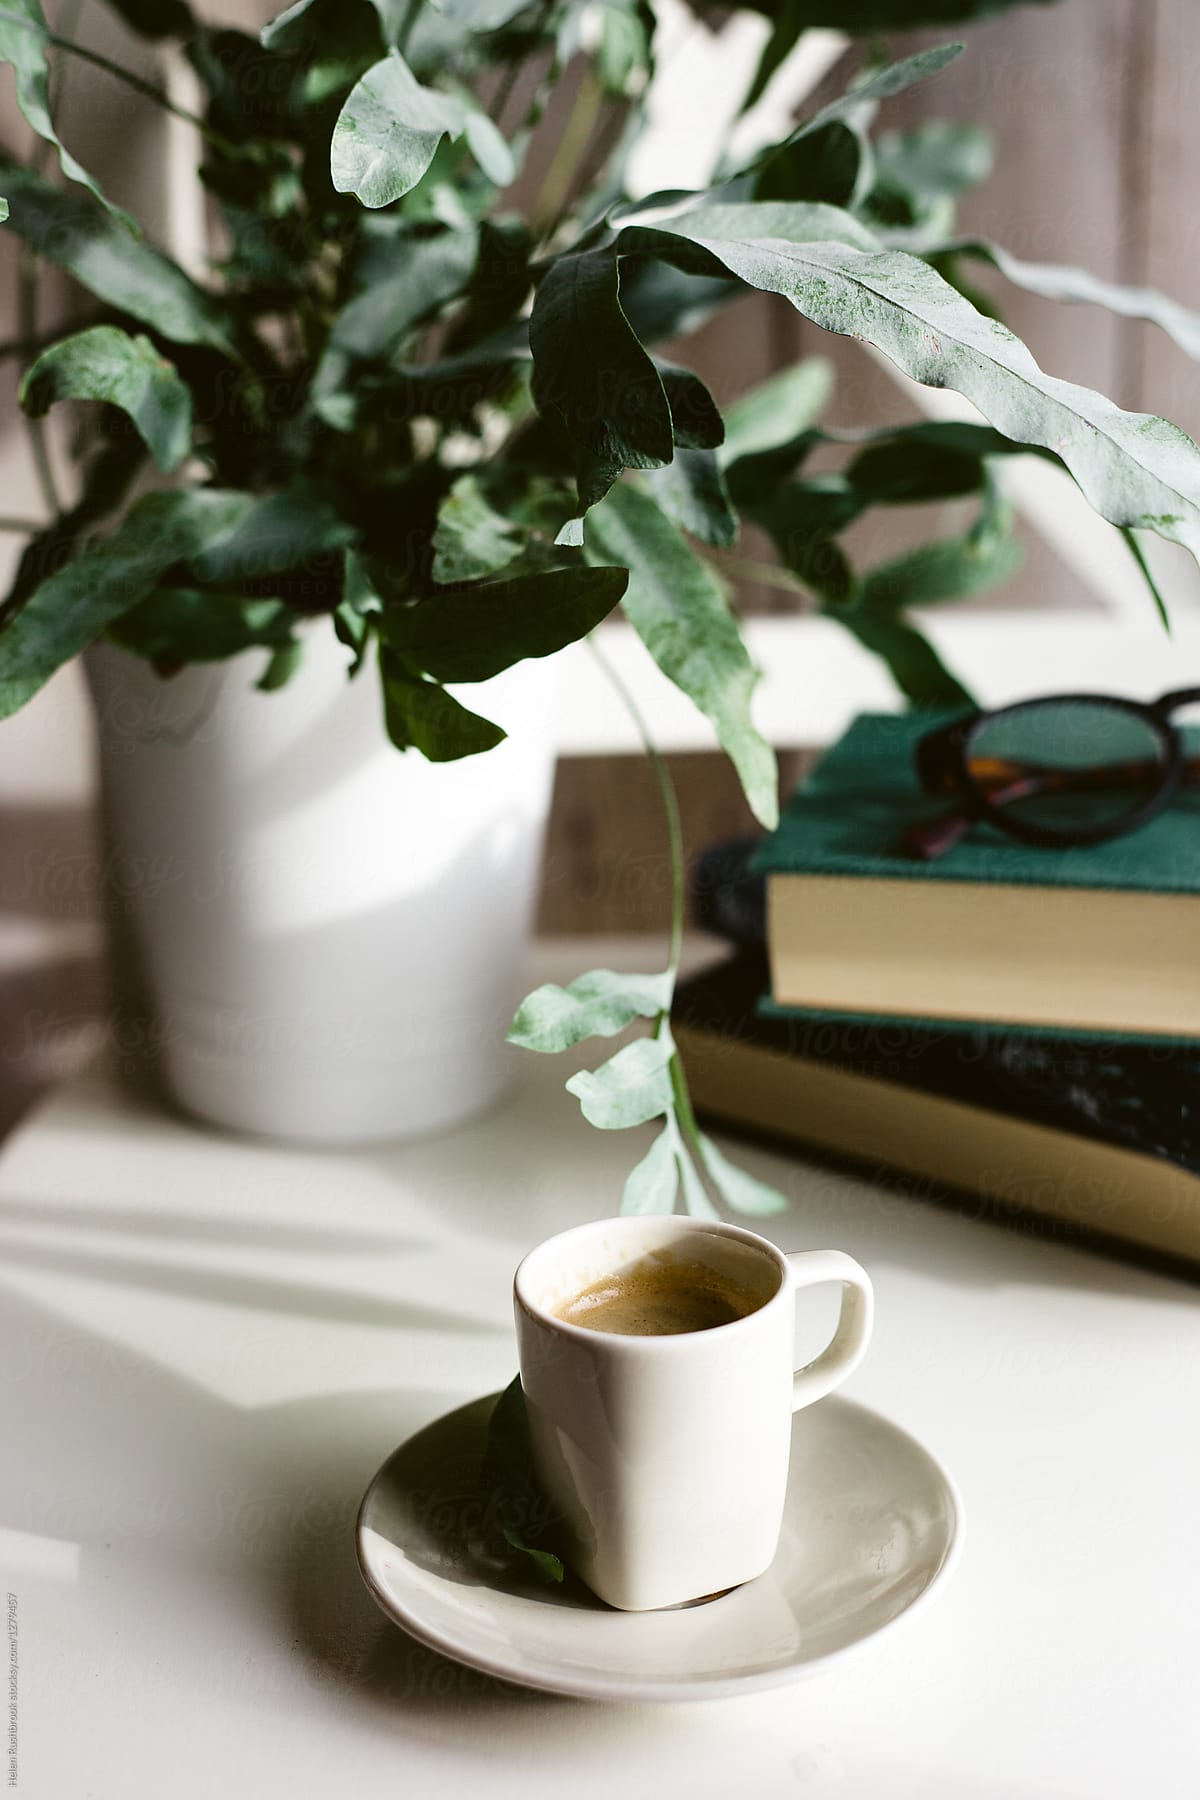 Espresso, books, plant, spectacles.